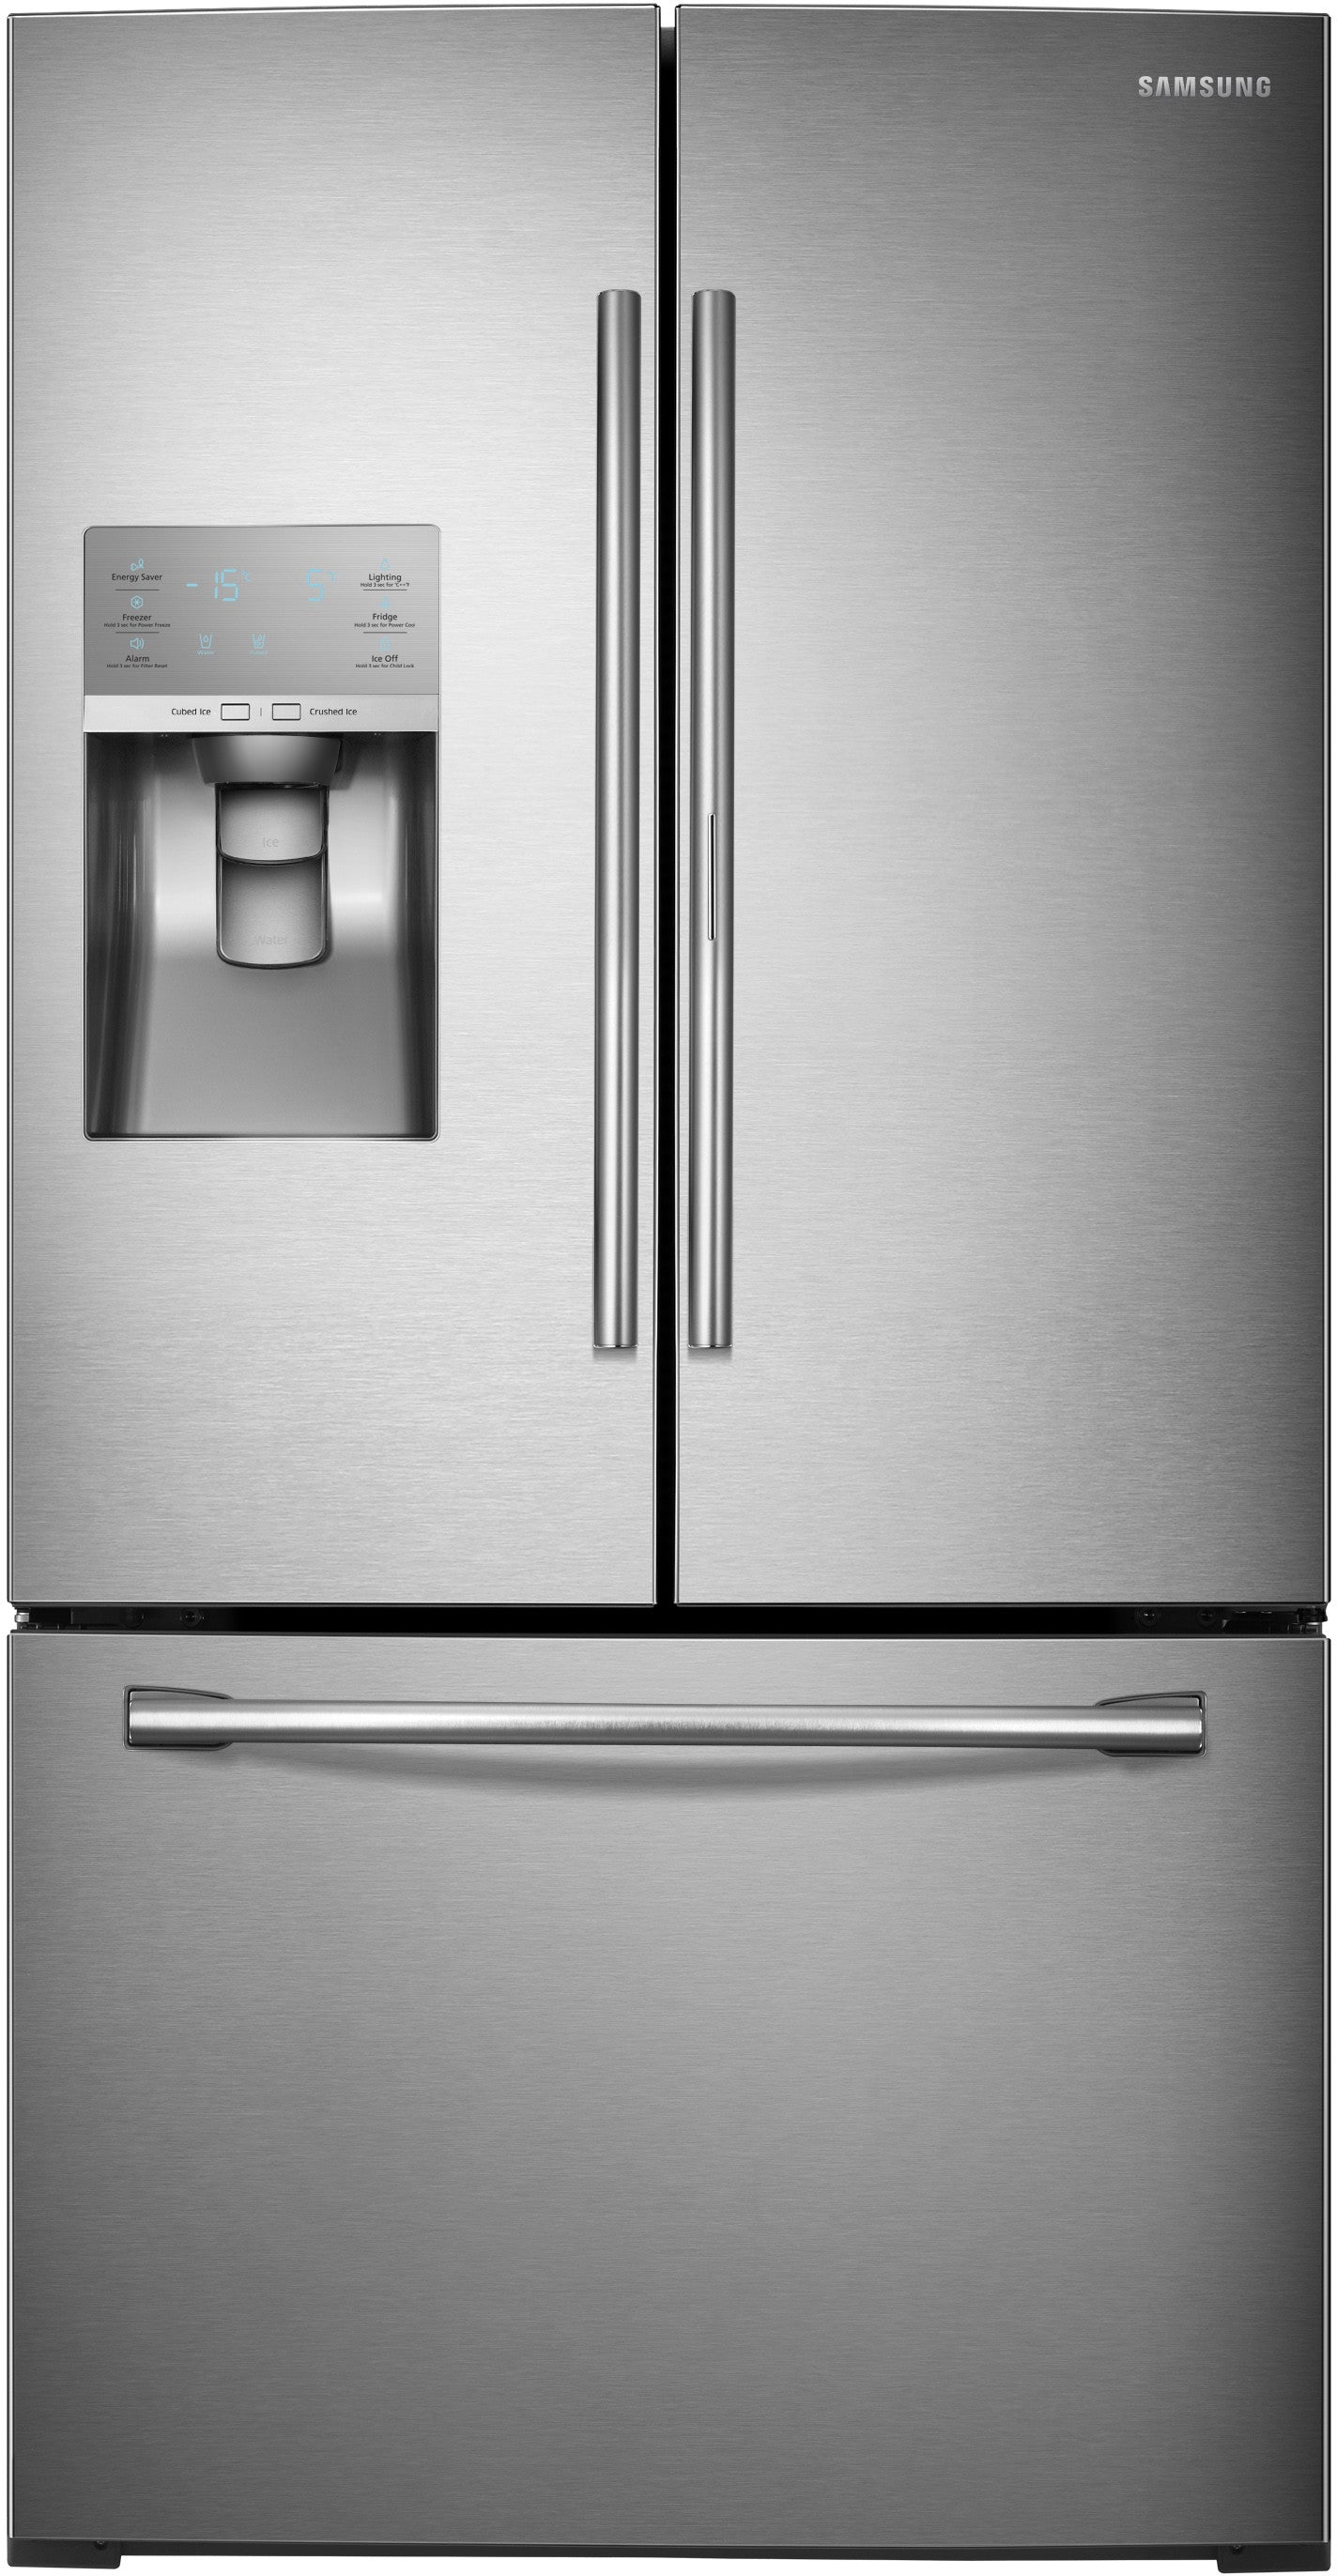 Samsung RF30HDEDTSR/AA 30.2 Cu. Ft. French Door Refrigerator